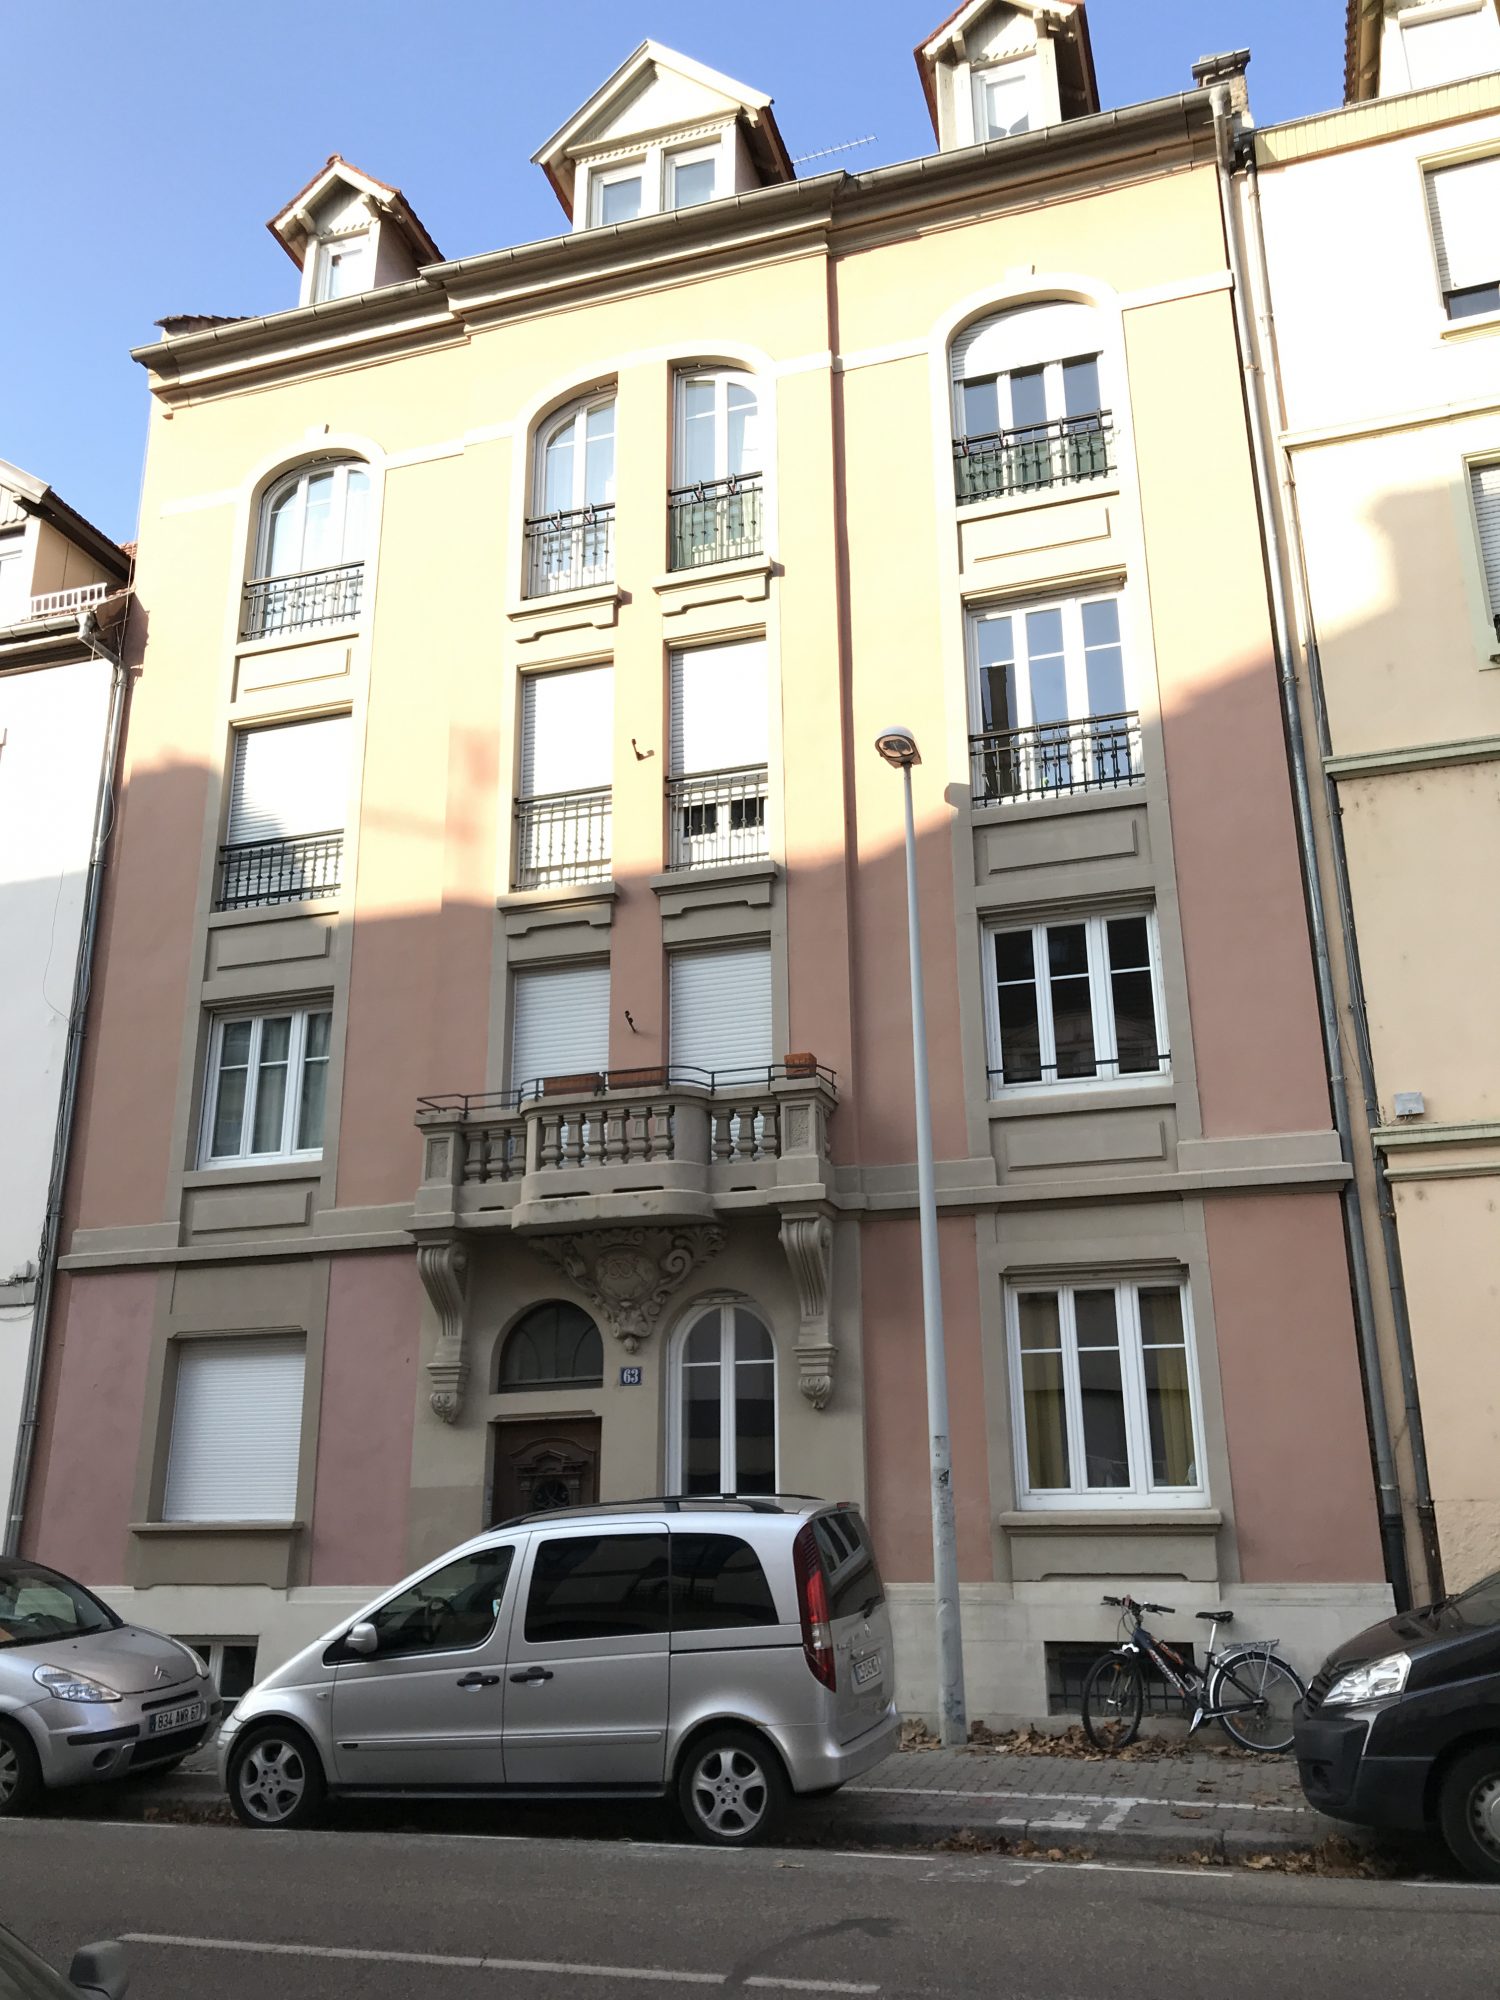 INVESTISSEMENT LOCATIF - achat appartement Strasbourg - Bintz Immobilier - 9